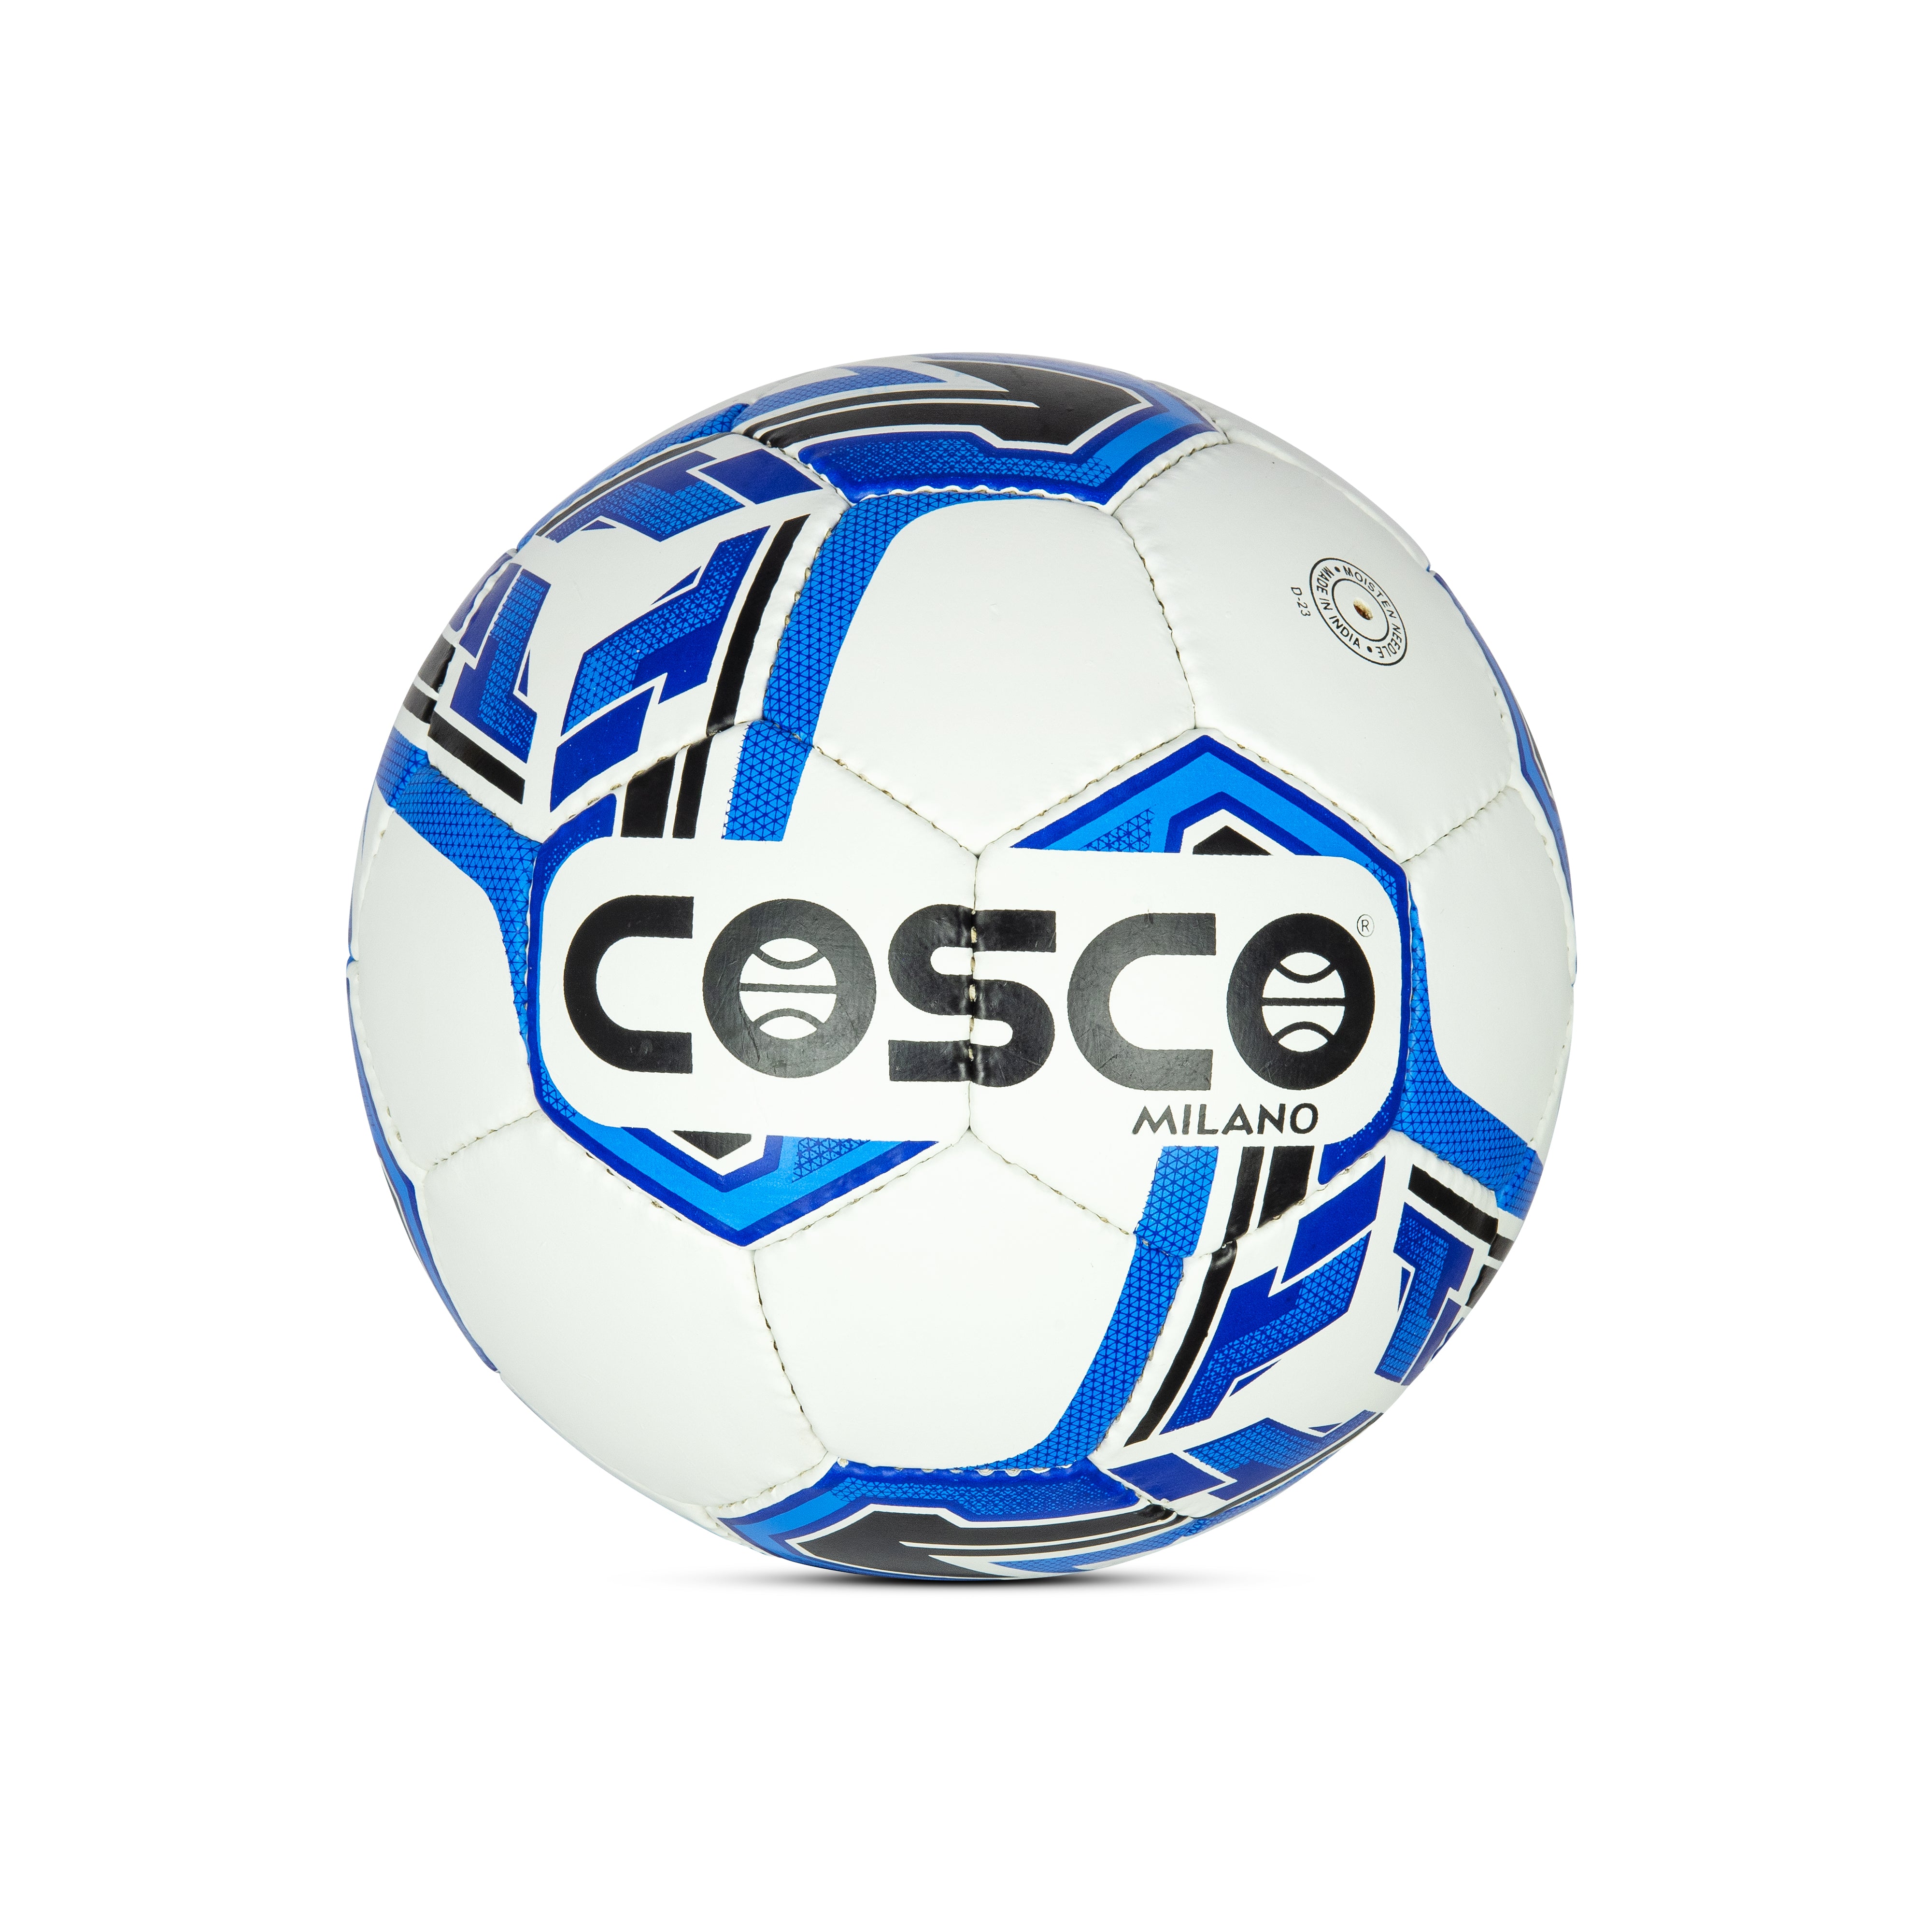 Milano S-5 Football